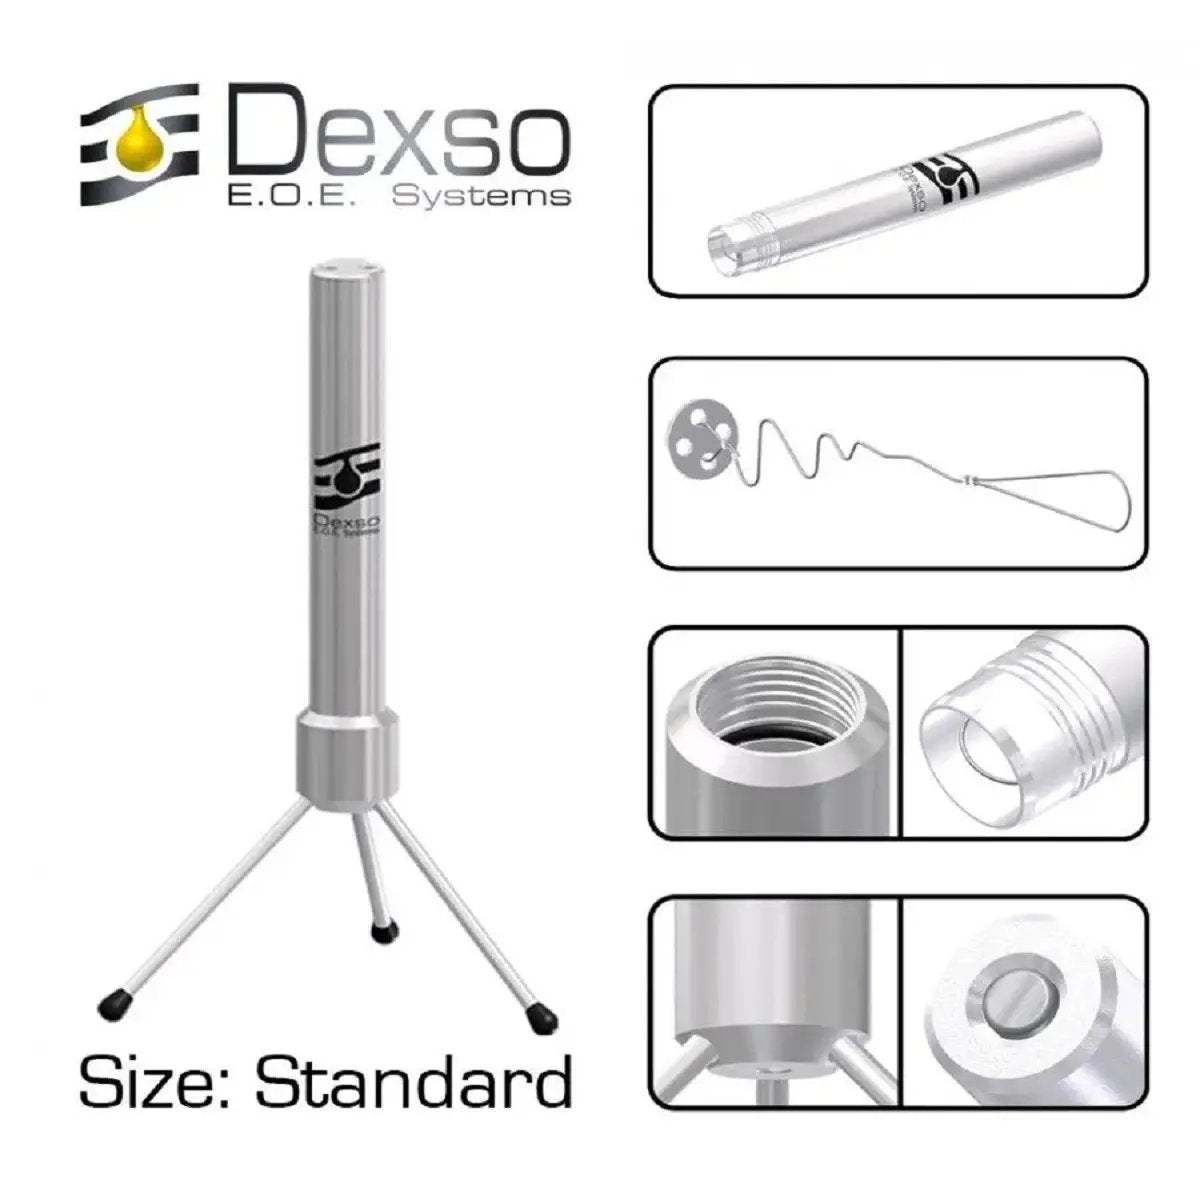 Dexso EOE - Standard Extractor